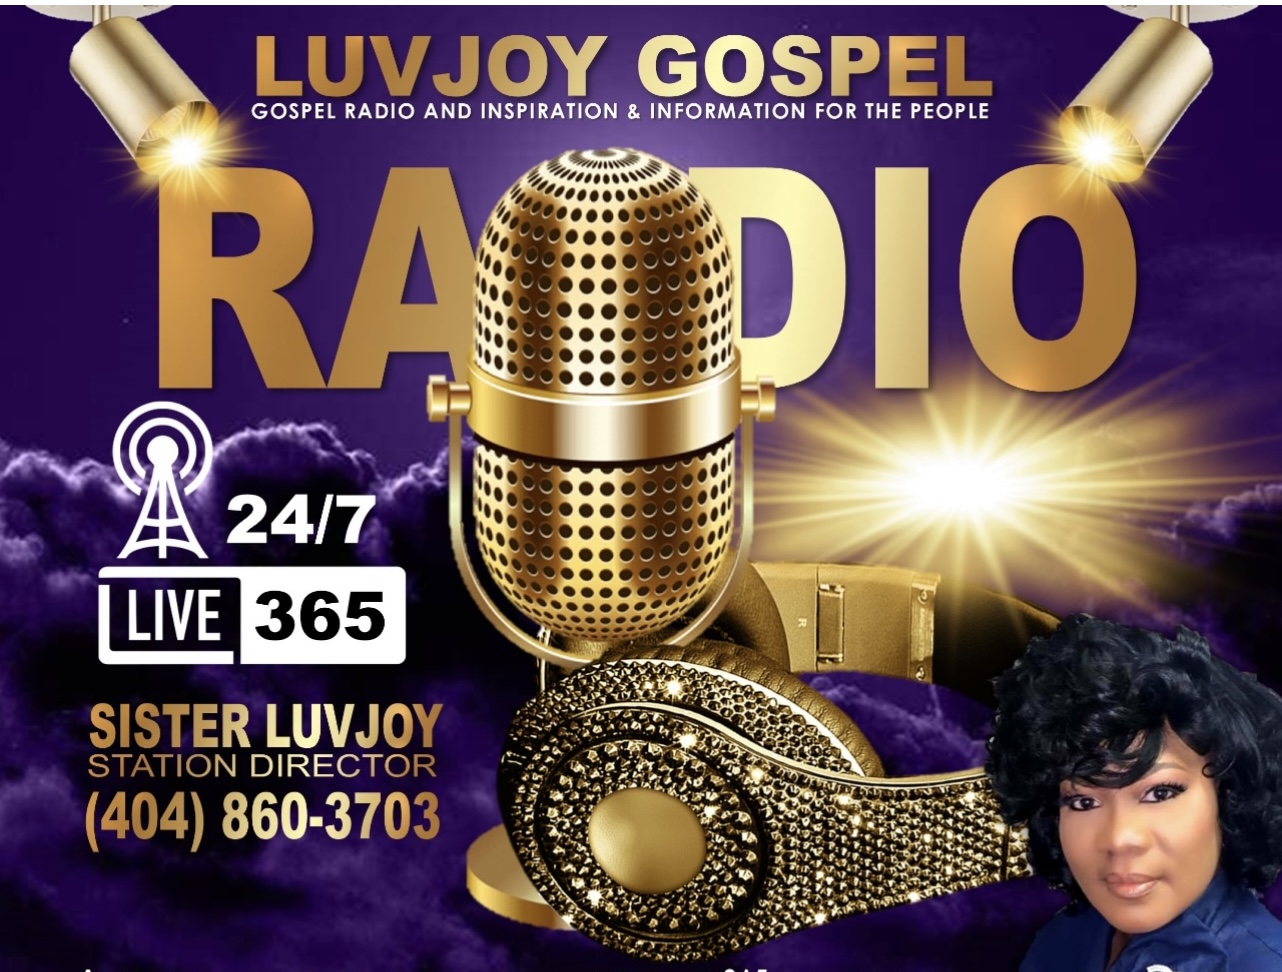 Art for Luvjoy Gospel Radio by Luvjoy Gospel Radio